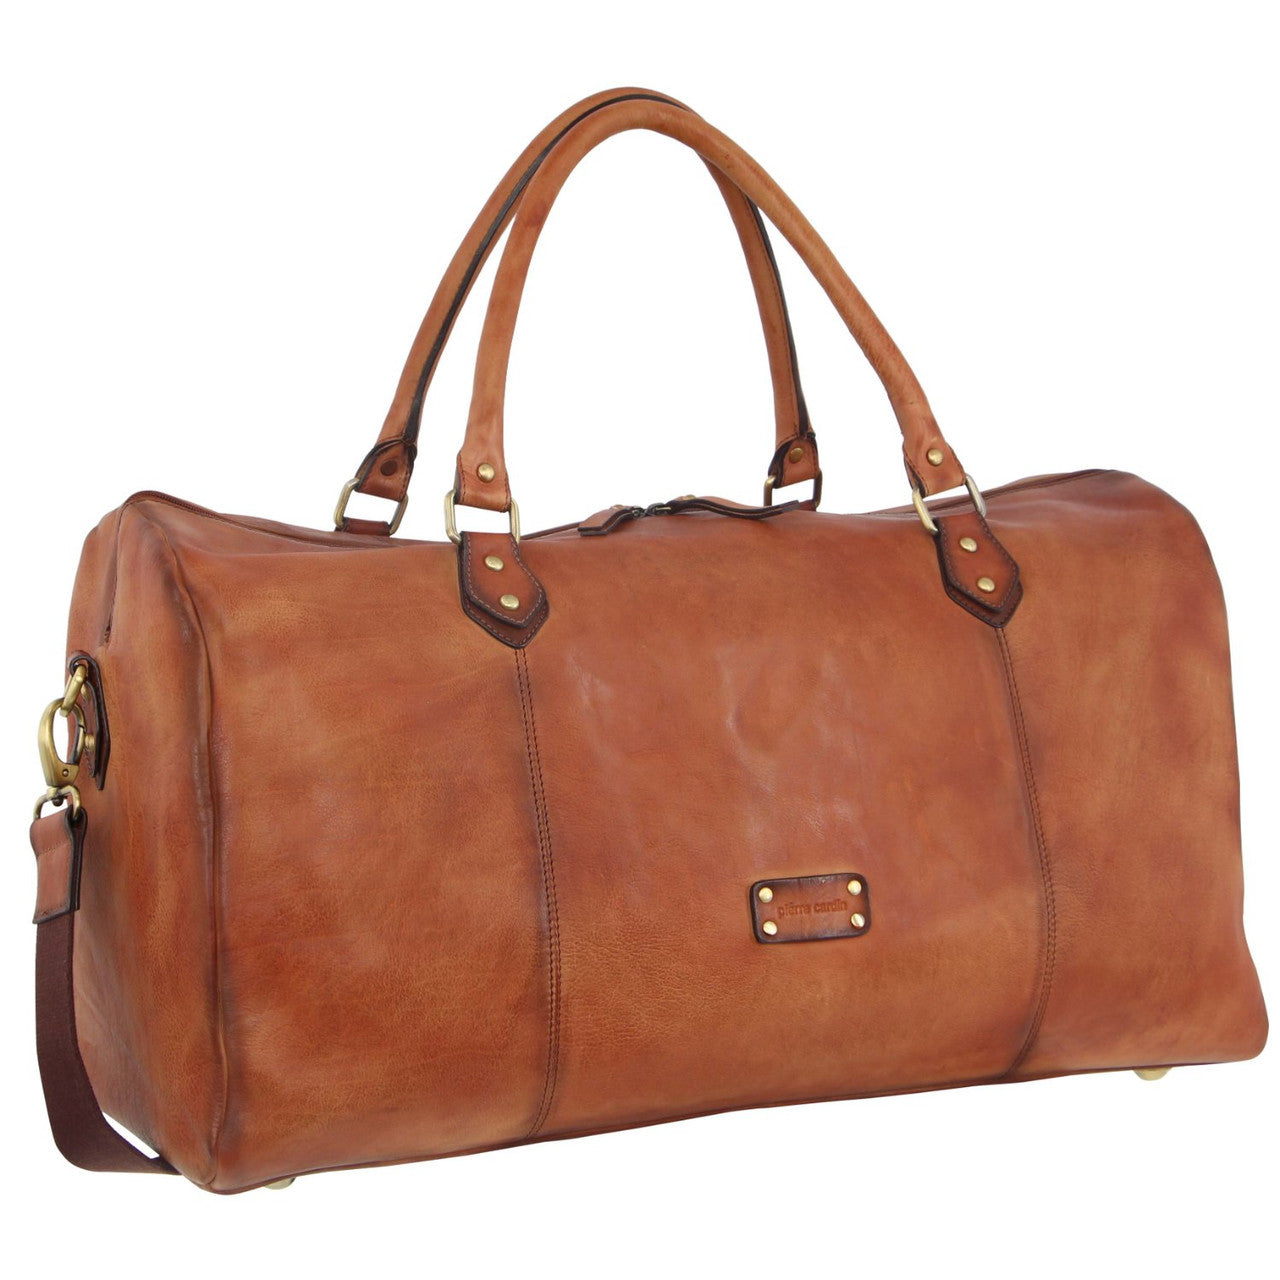 Pierre Cardin - 56cm Leather overnight bag PC3335 - Cognac